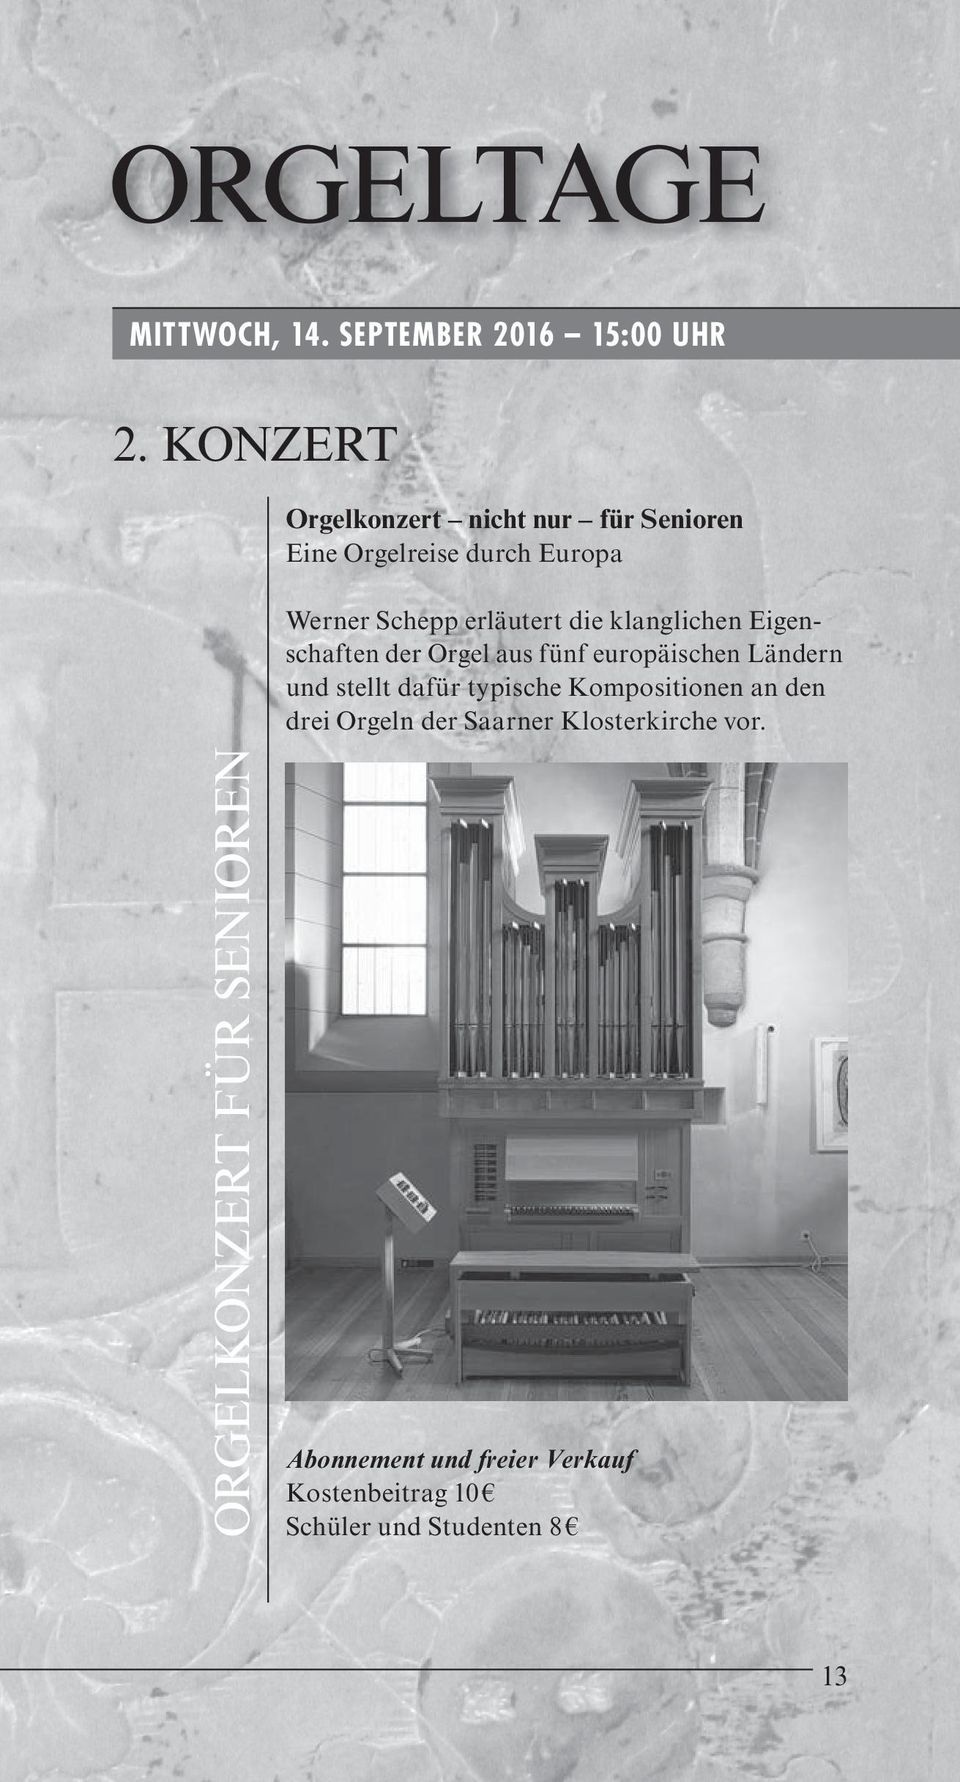 klanglichen Eigenschaften der Orgel aus fünf europäischen Ländern und stellt dafür typische